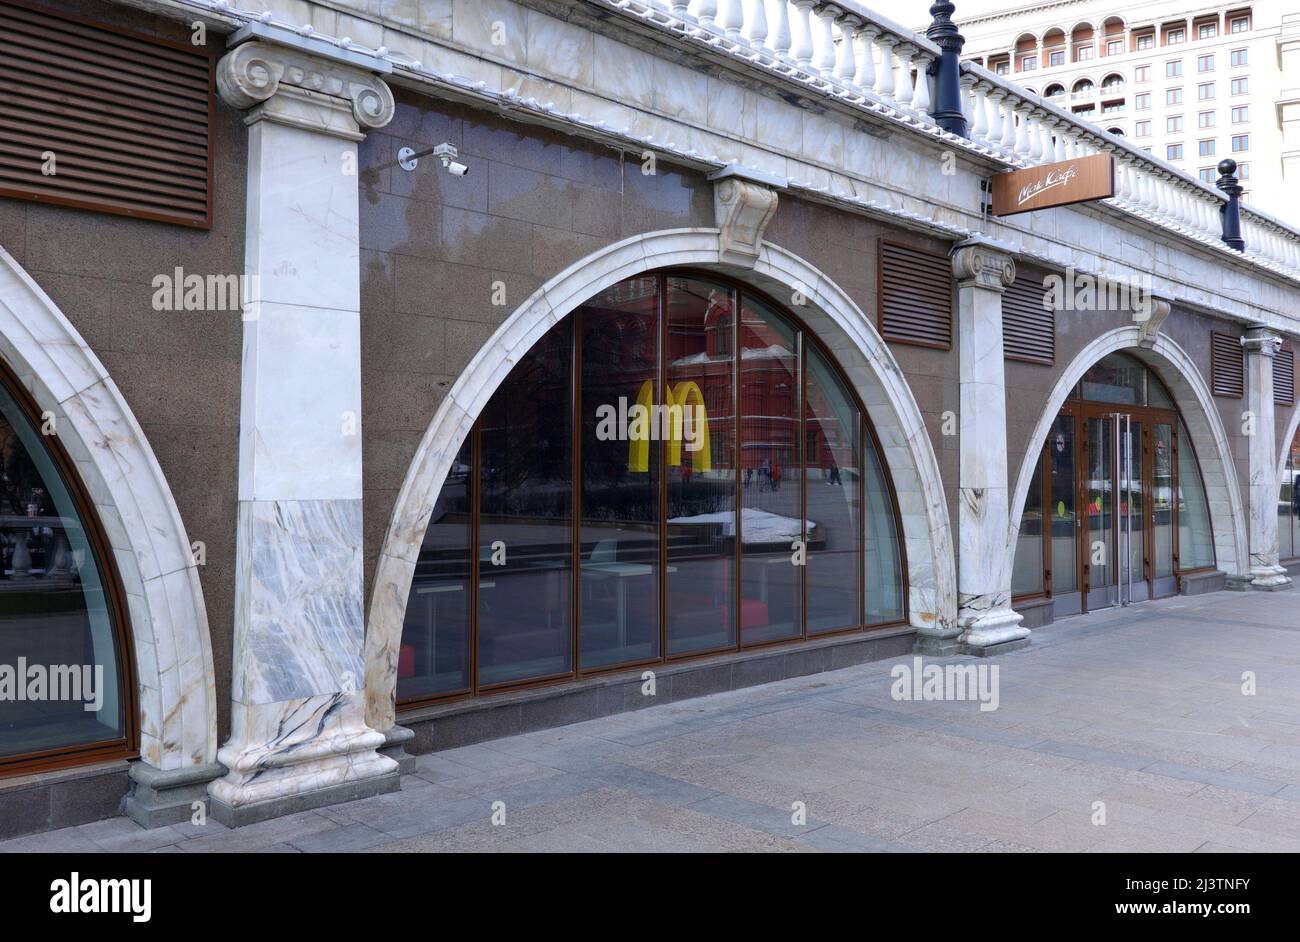 La catena di ristoranti fast food McDonalds e' chiusa in Russia, con vista laterale del caffe' vuoto Foto Stock